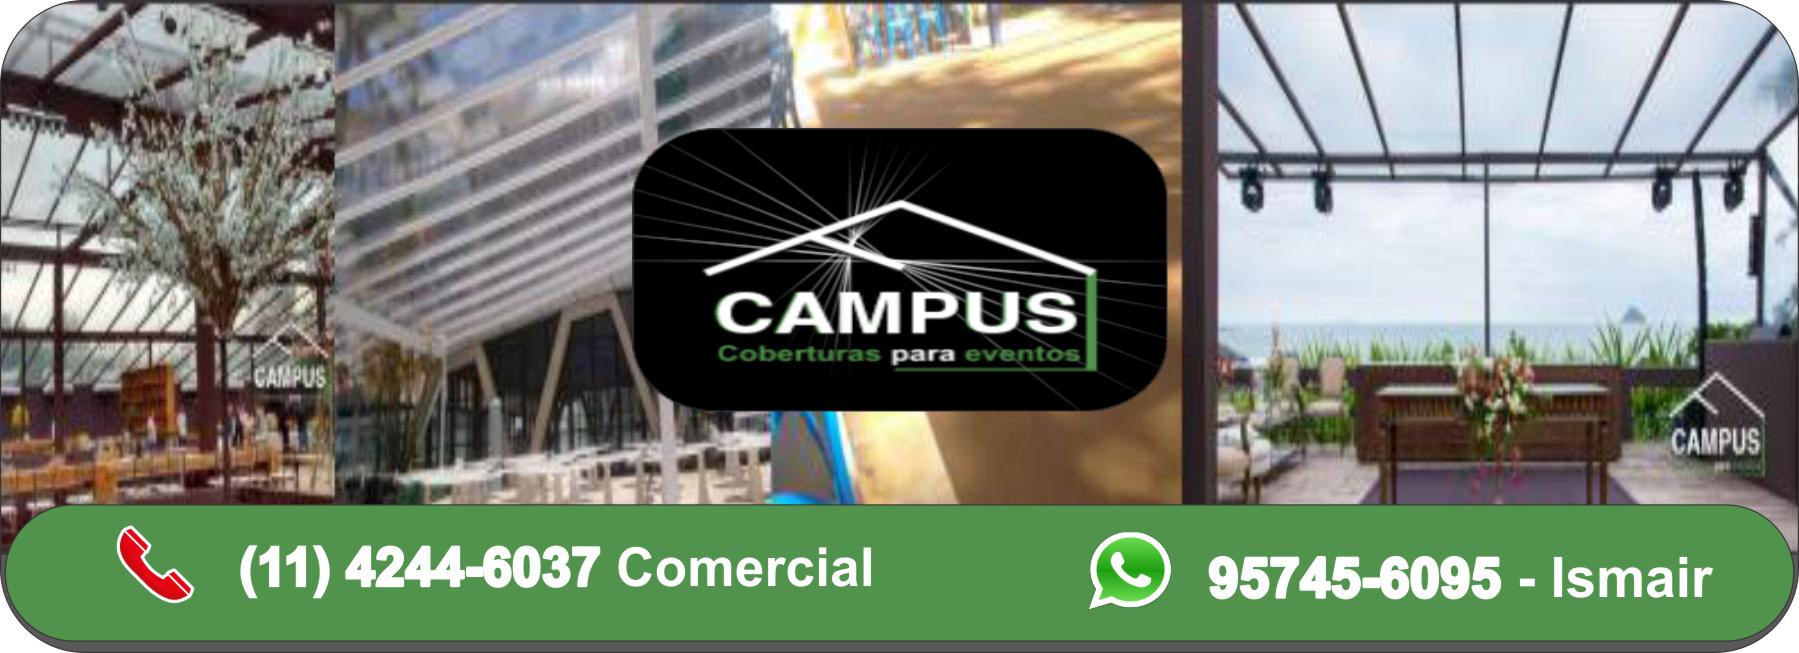 Empresa de Coberturas Para Eventos em São Paulo | Campus Coberturas